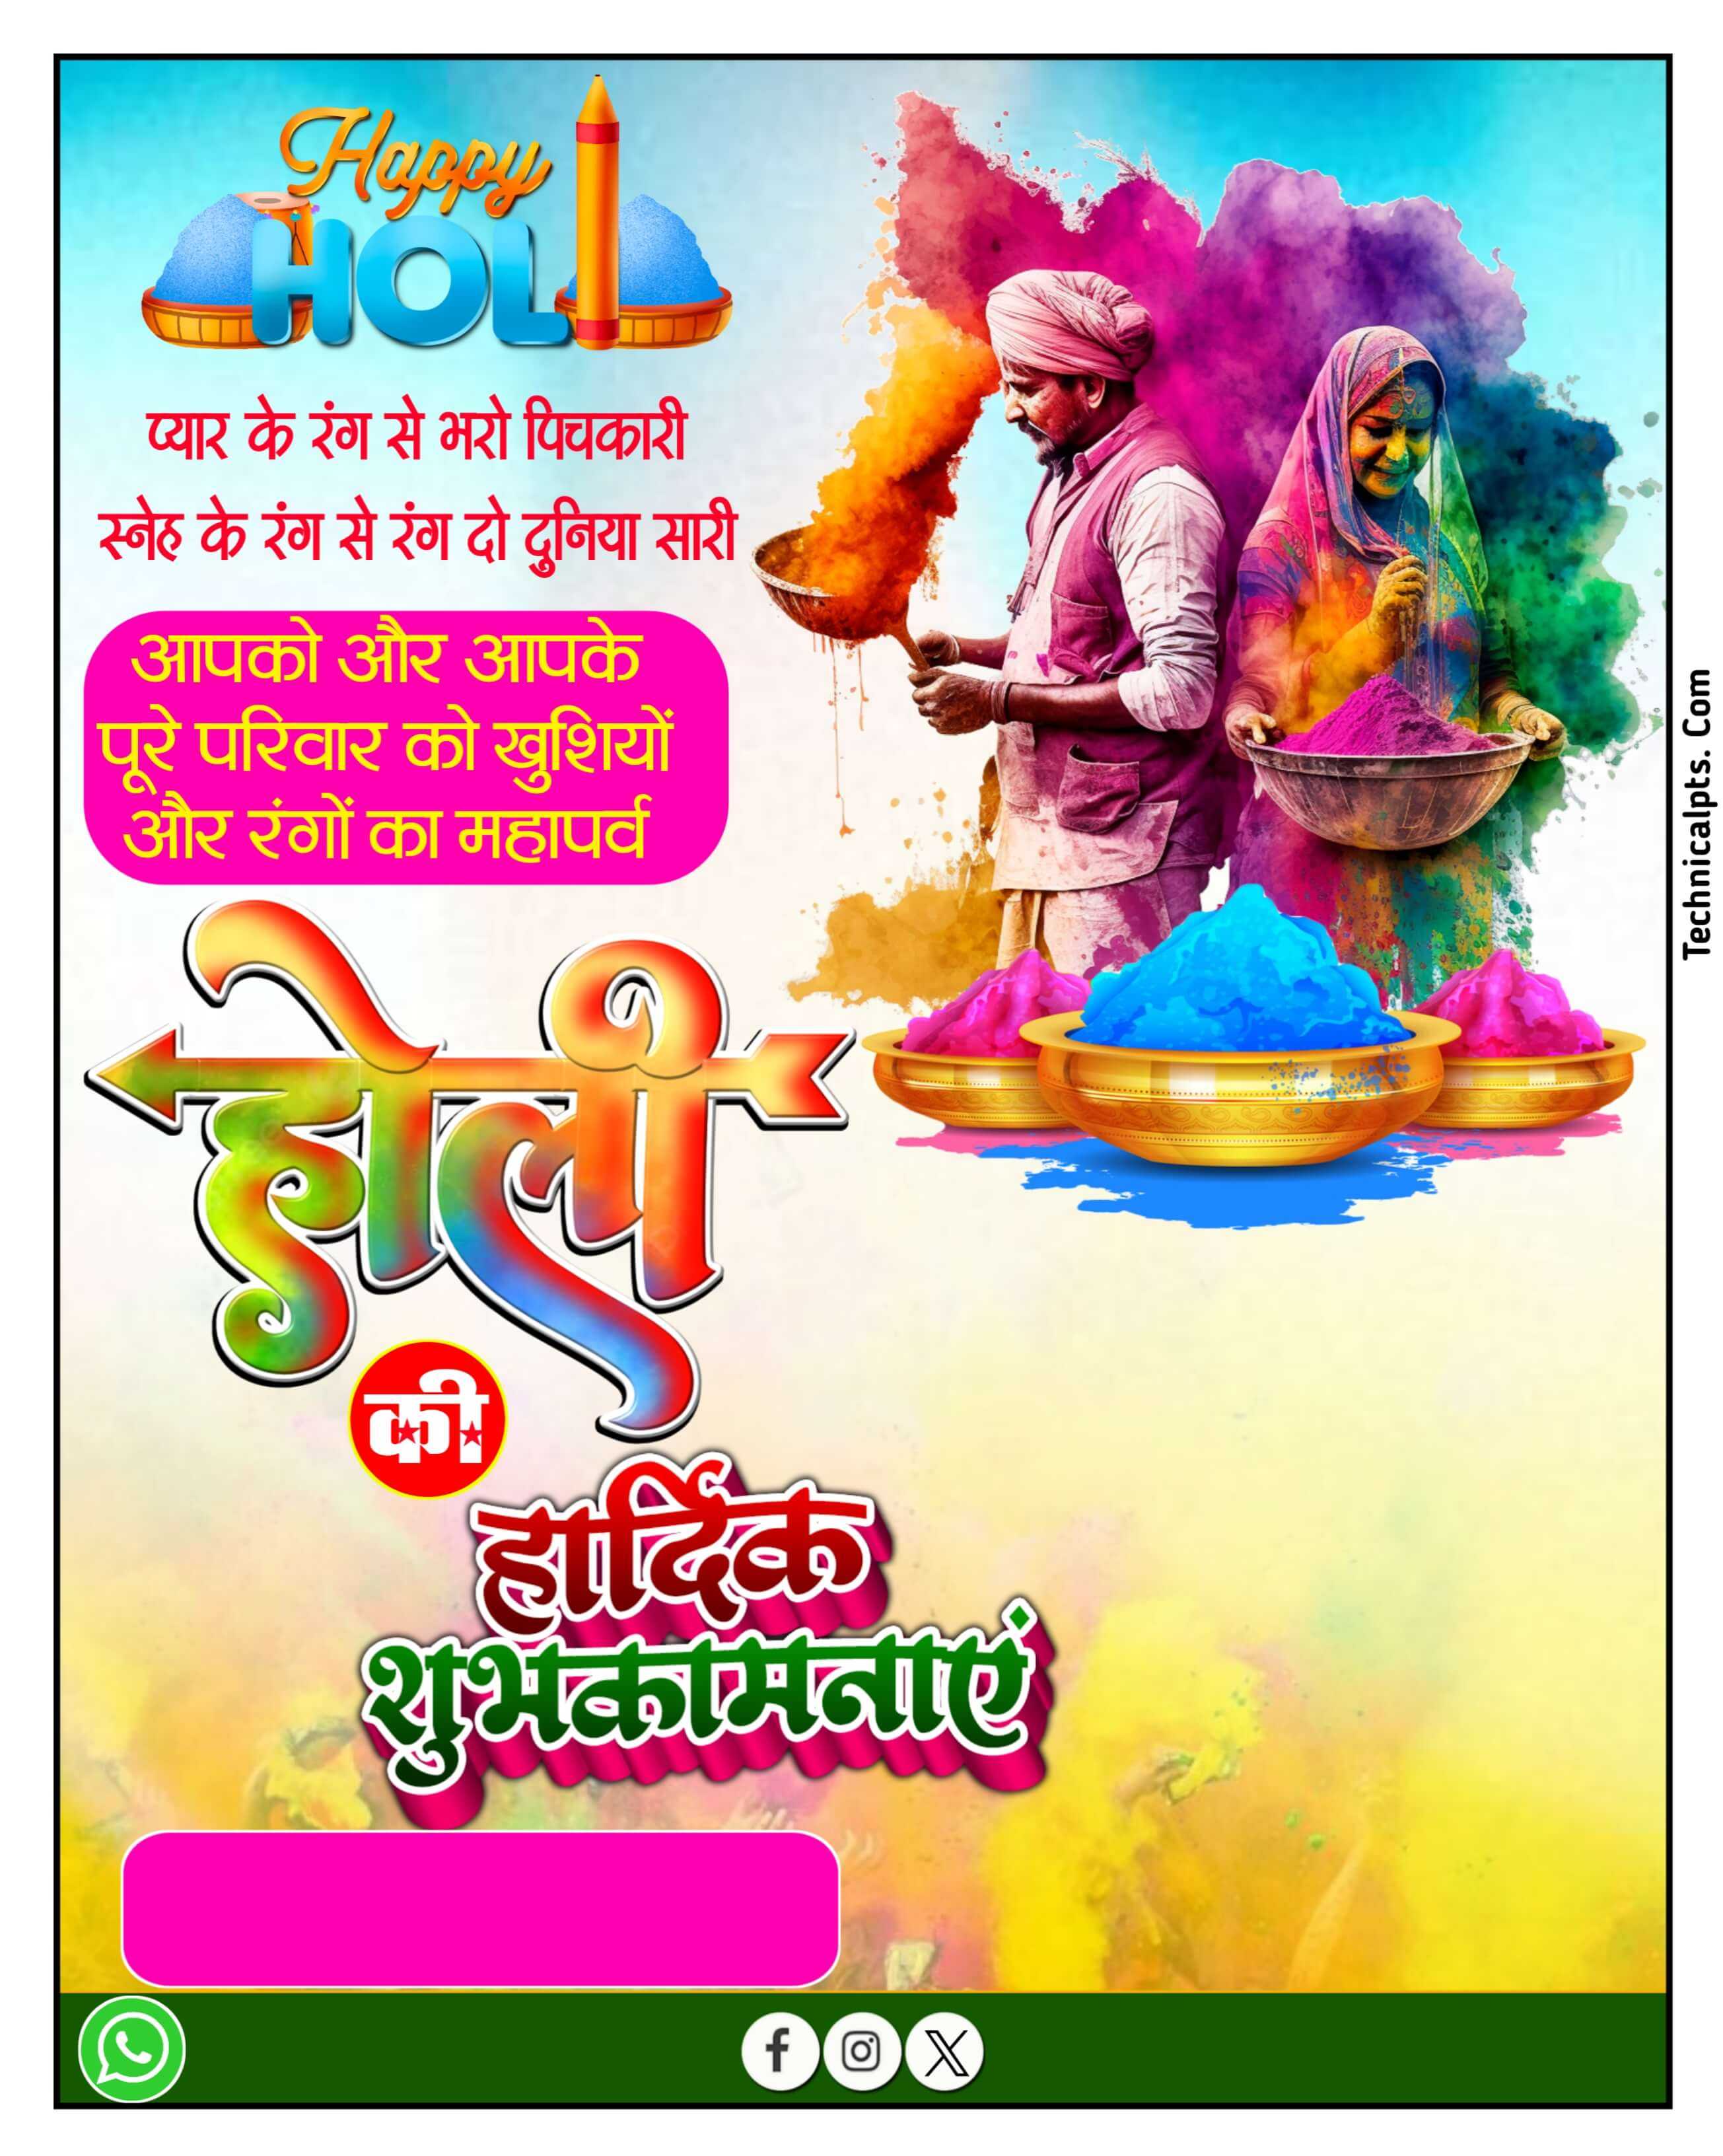 Happy Holi banner plp file download | Holi ka Banner Kaise banaen mobile se| Holi poster design plp file download